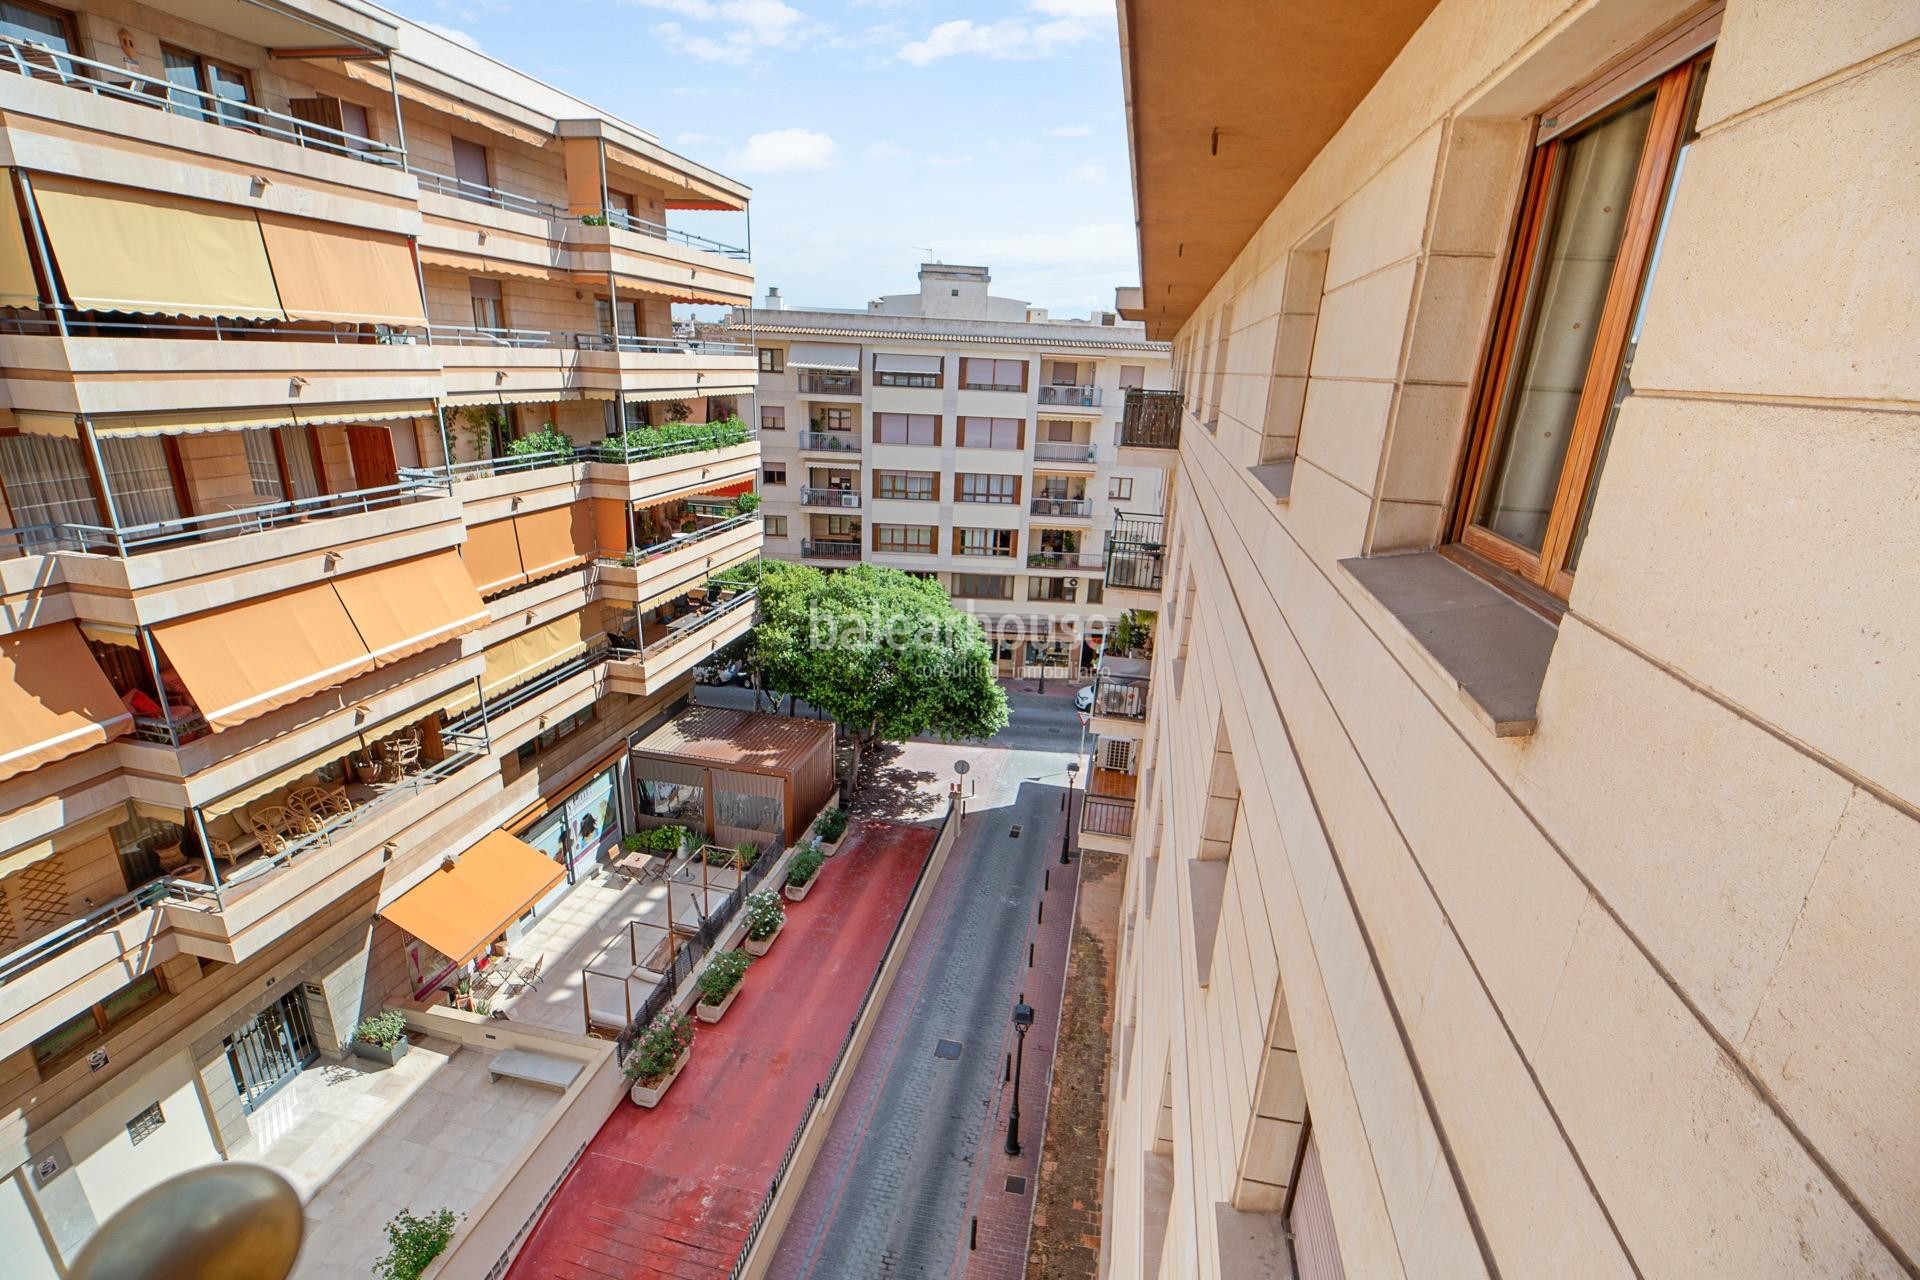 Hervorragende und helle Wohnung von großen Abmessungen im Zentrum von Palma gelegen.